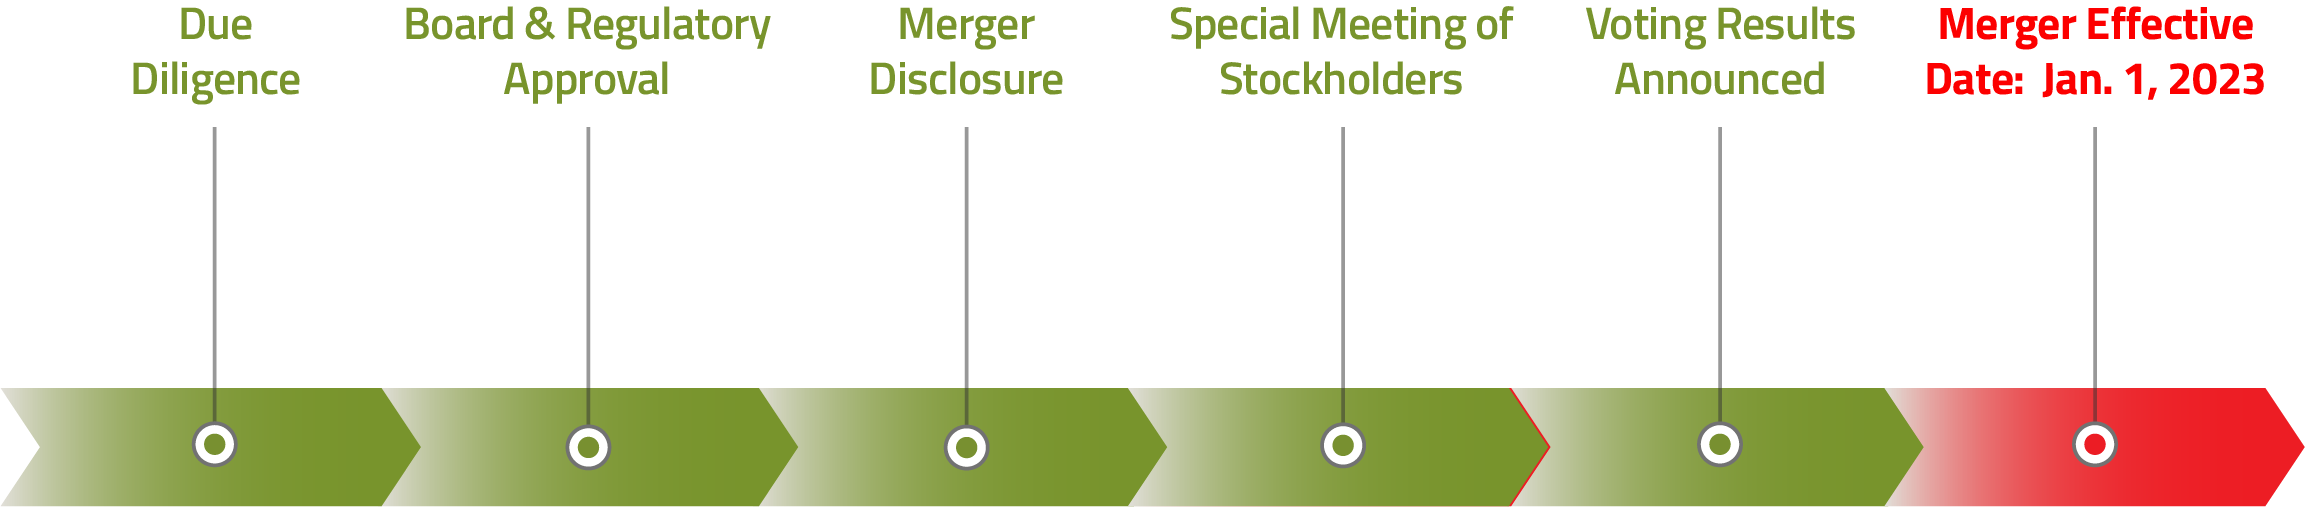 Timeline for merger